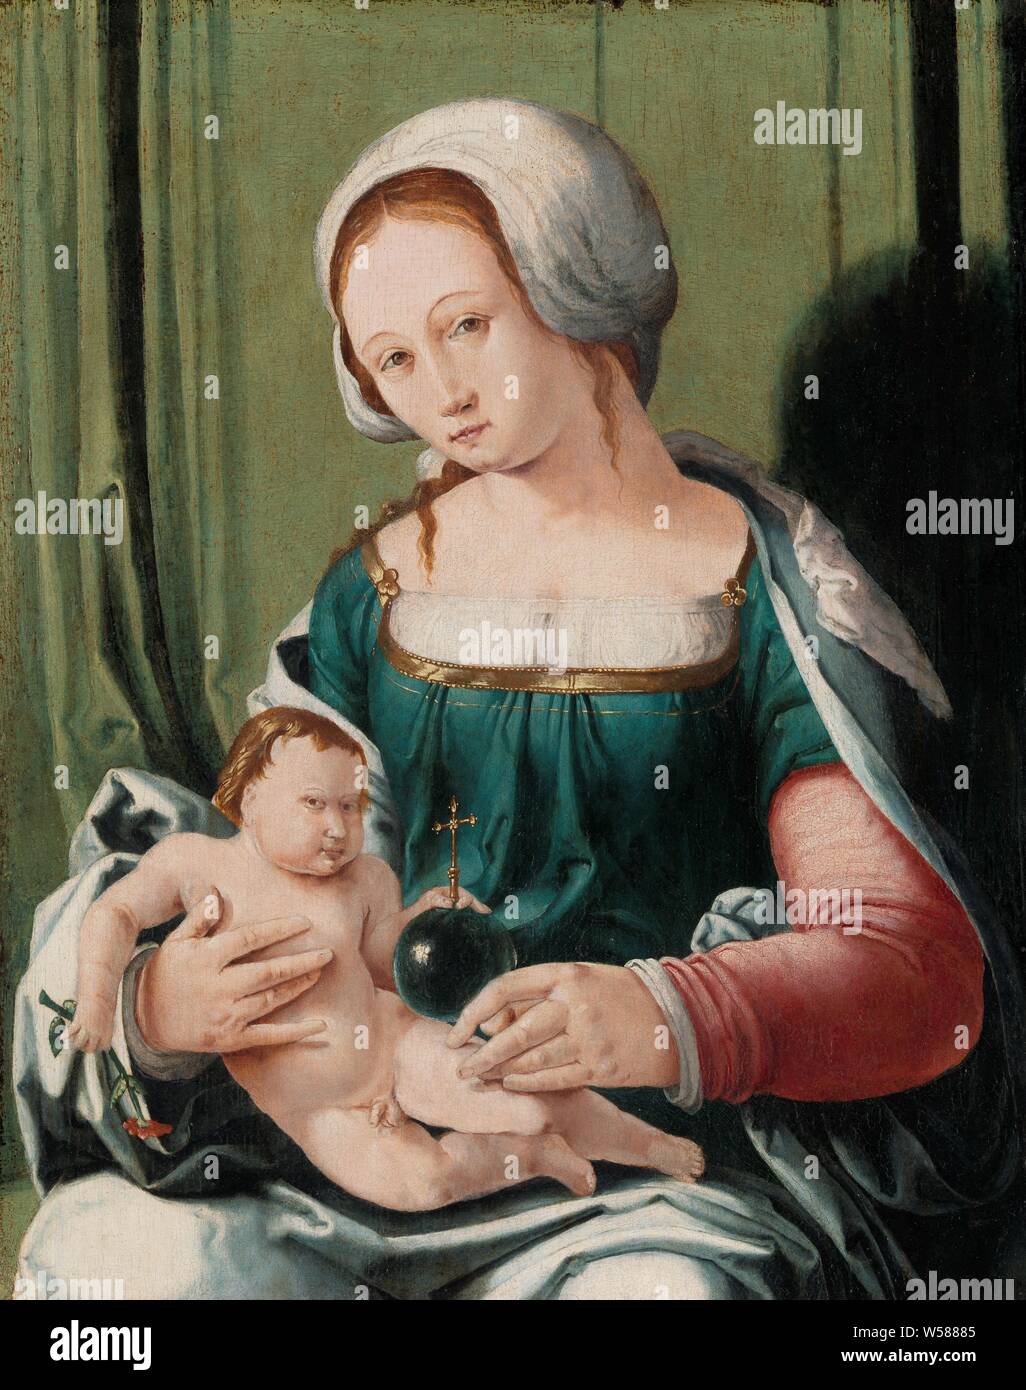 Vierge à l'enfant, vierge et l'enfant, Maria avec enfant. Marie, assise avec l'enfant Jésus sur ses genoux. L'enfant tient dans sa main gauche l'apple avec croix et une fleur dans la main droite, Mary assis ou un trône, l'enfant Jésus en face de ses genoux (ou à l'avant ou à sa poitrine), Lucas van Leyden (attribué à), Leiden, ch. 1530, tableau de bord, de la peinture à l'huile (peinture), support : h 34,5 cm × 27,5 cm w Banque D'Images